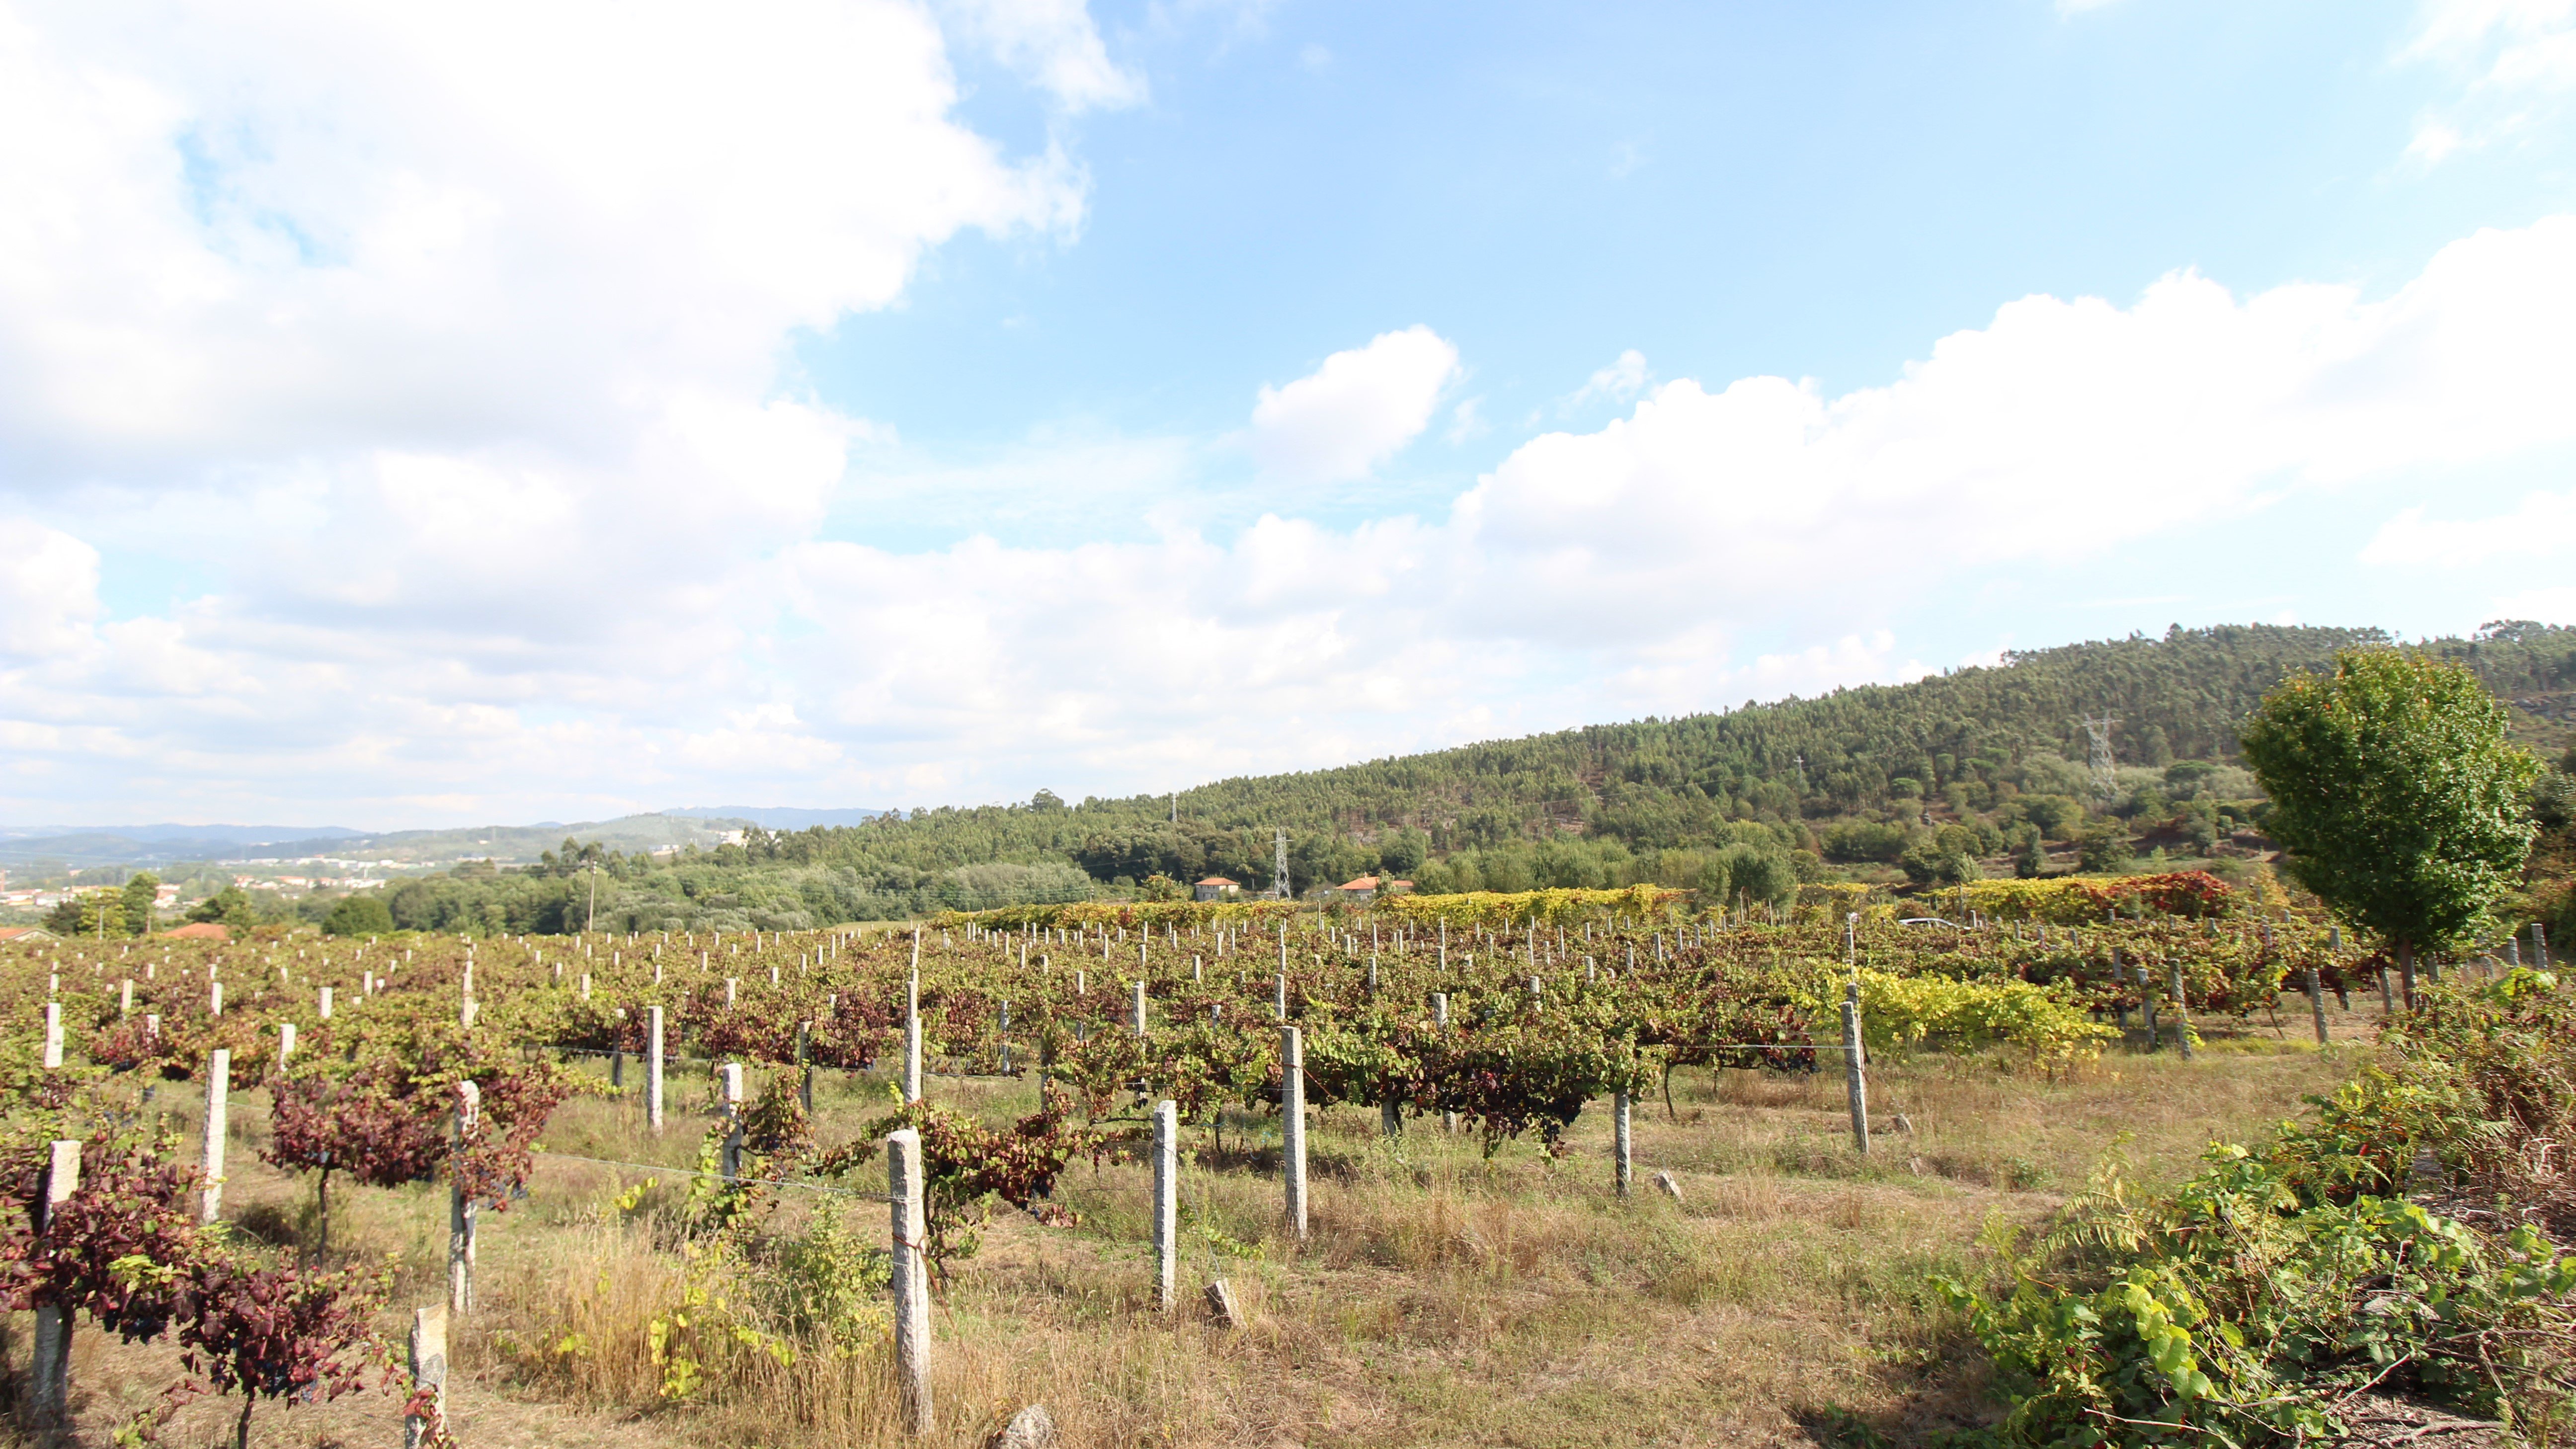 Foto 1 Quinta do Gremil Habitação rural com exploração vitivinícola